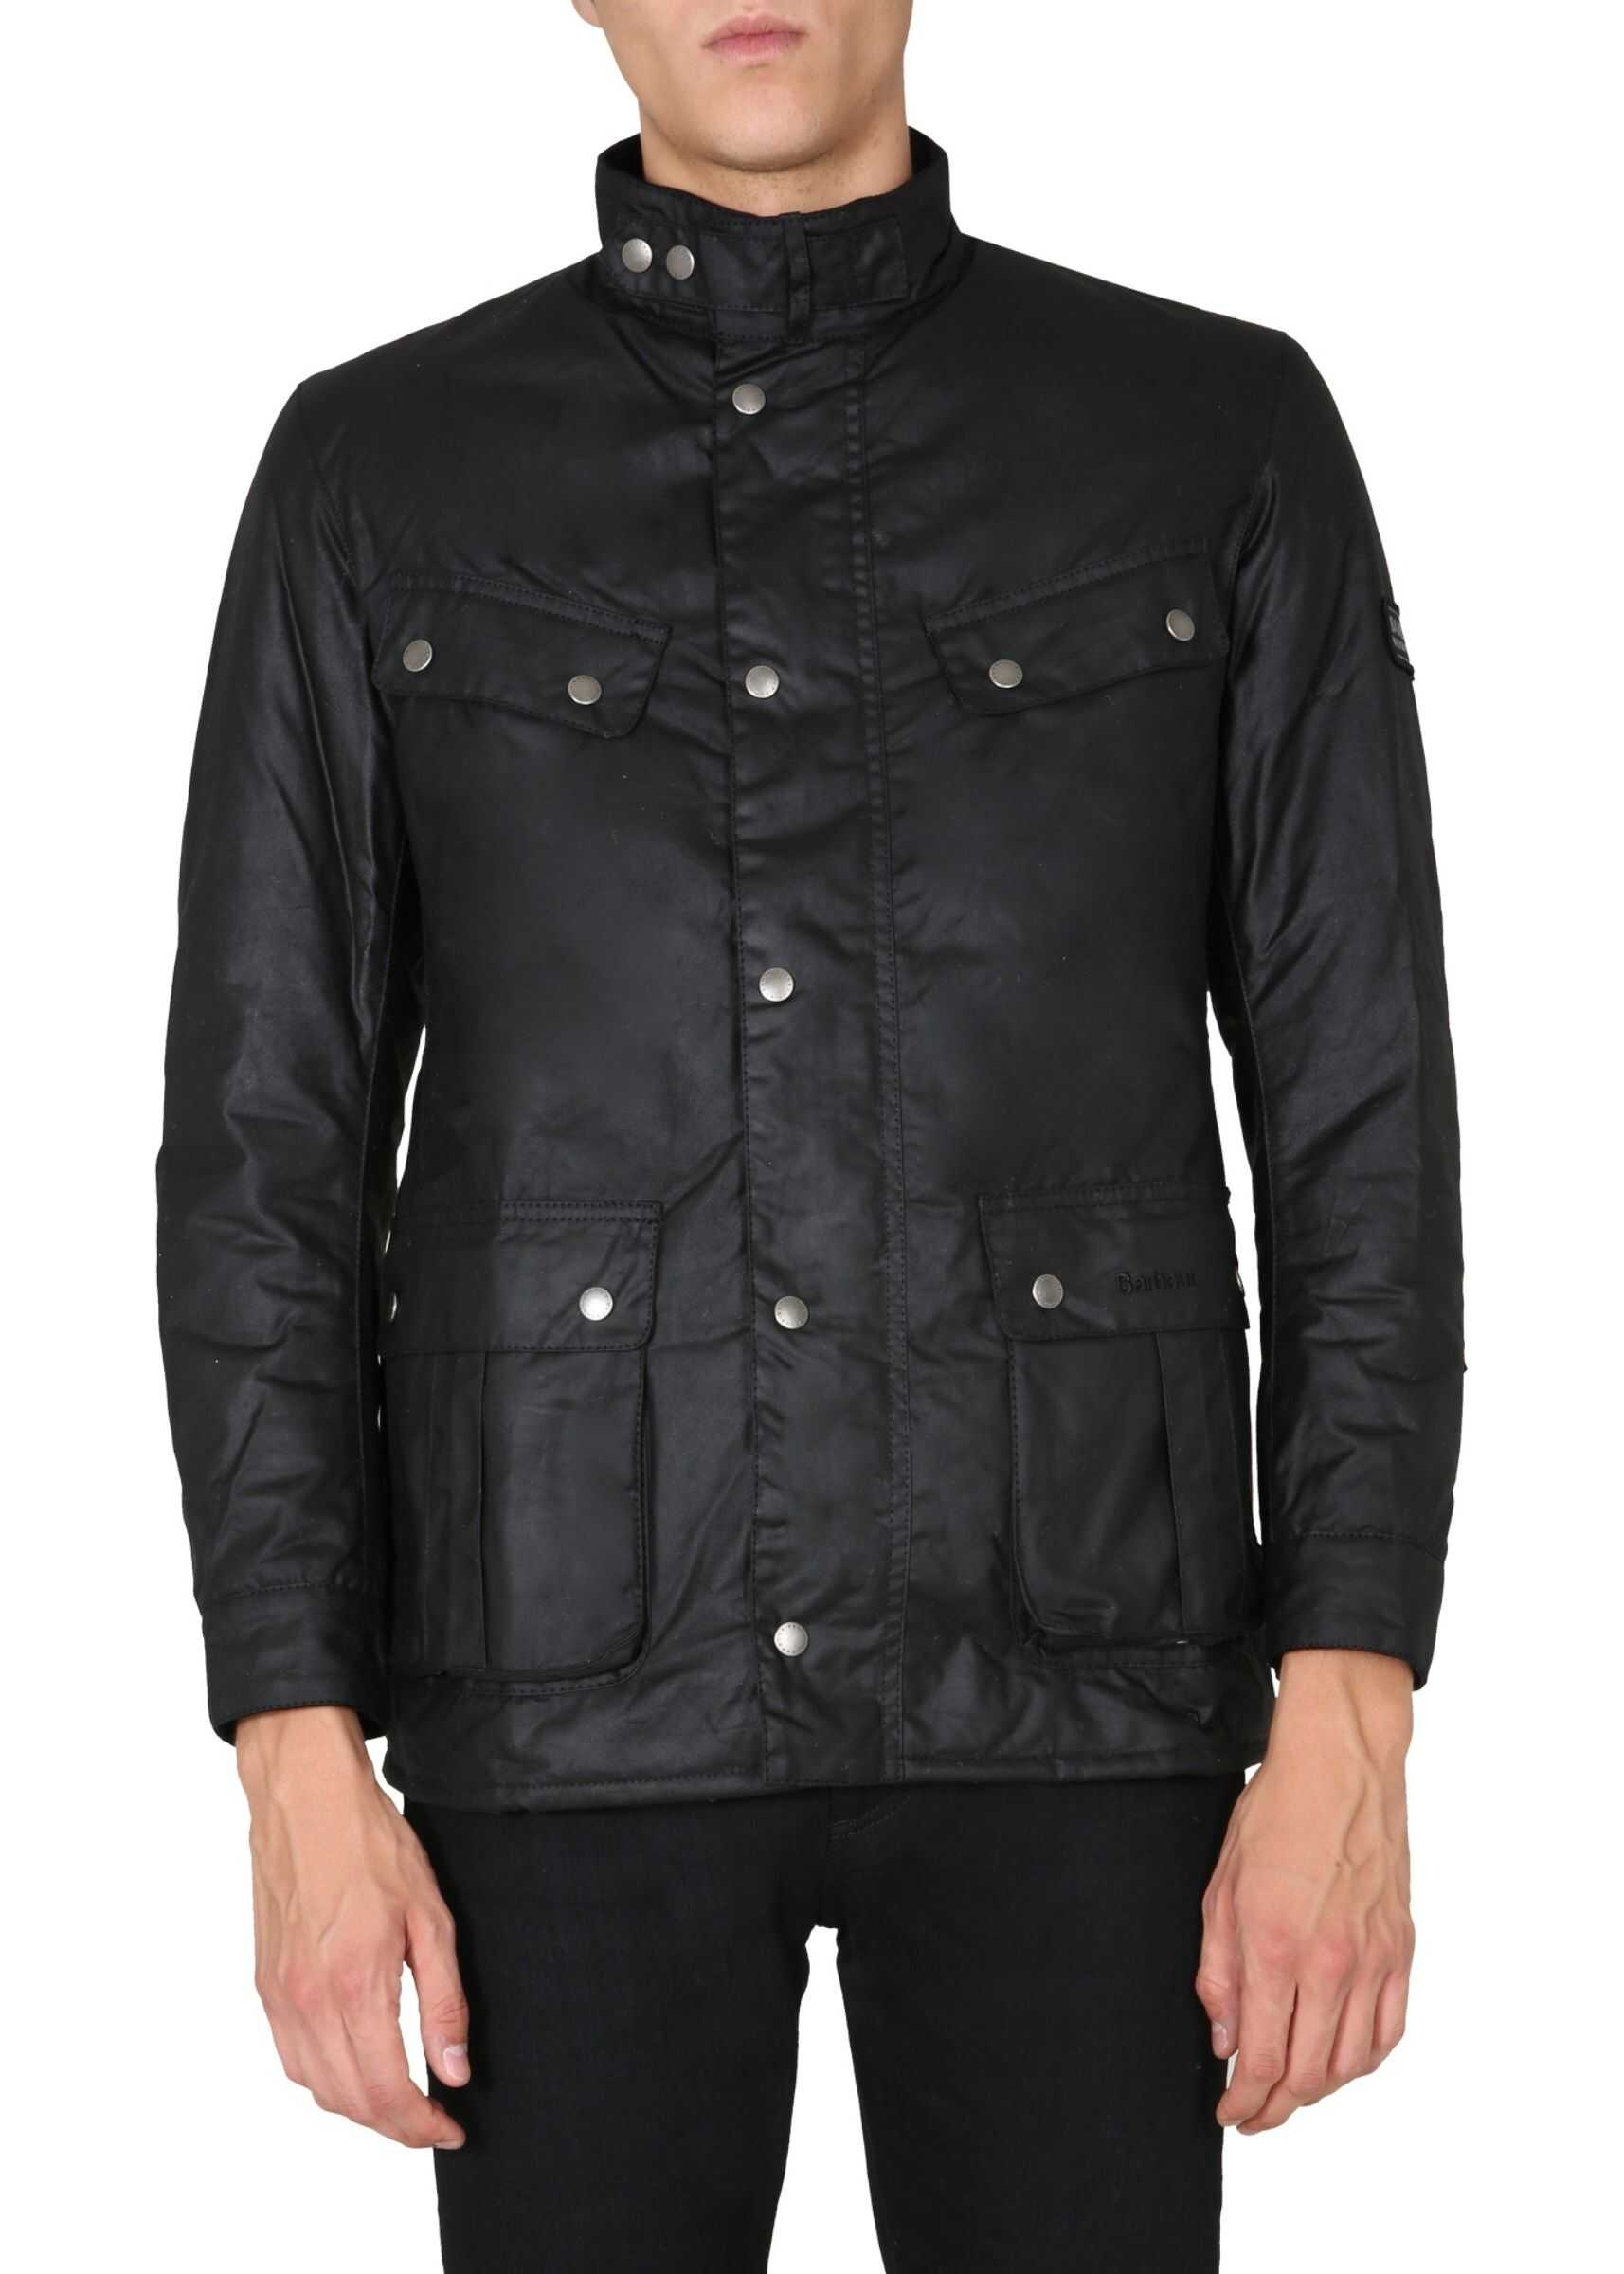 Barbour International Jacket BLACK